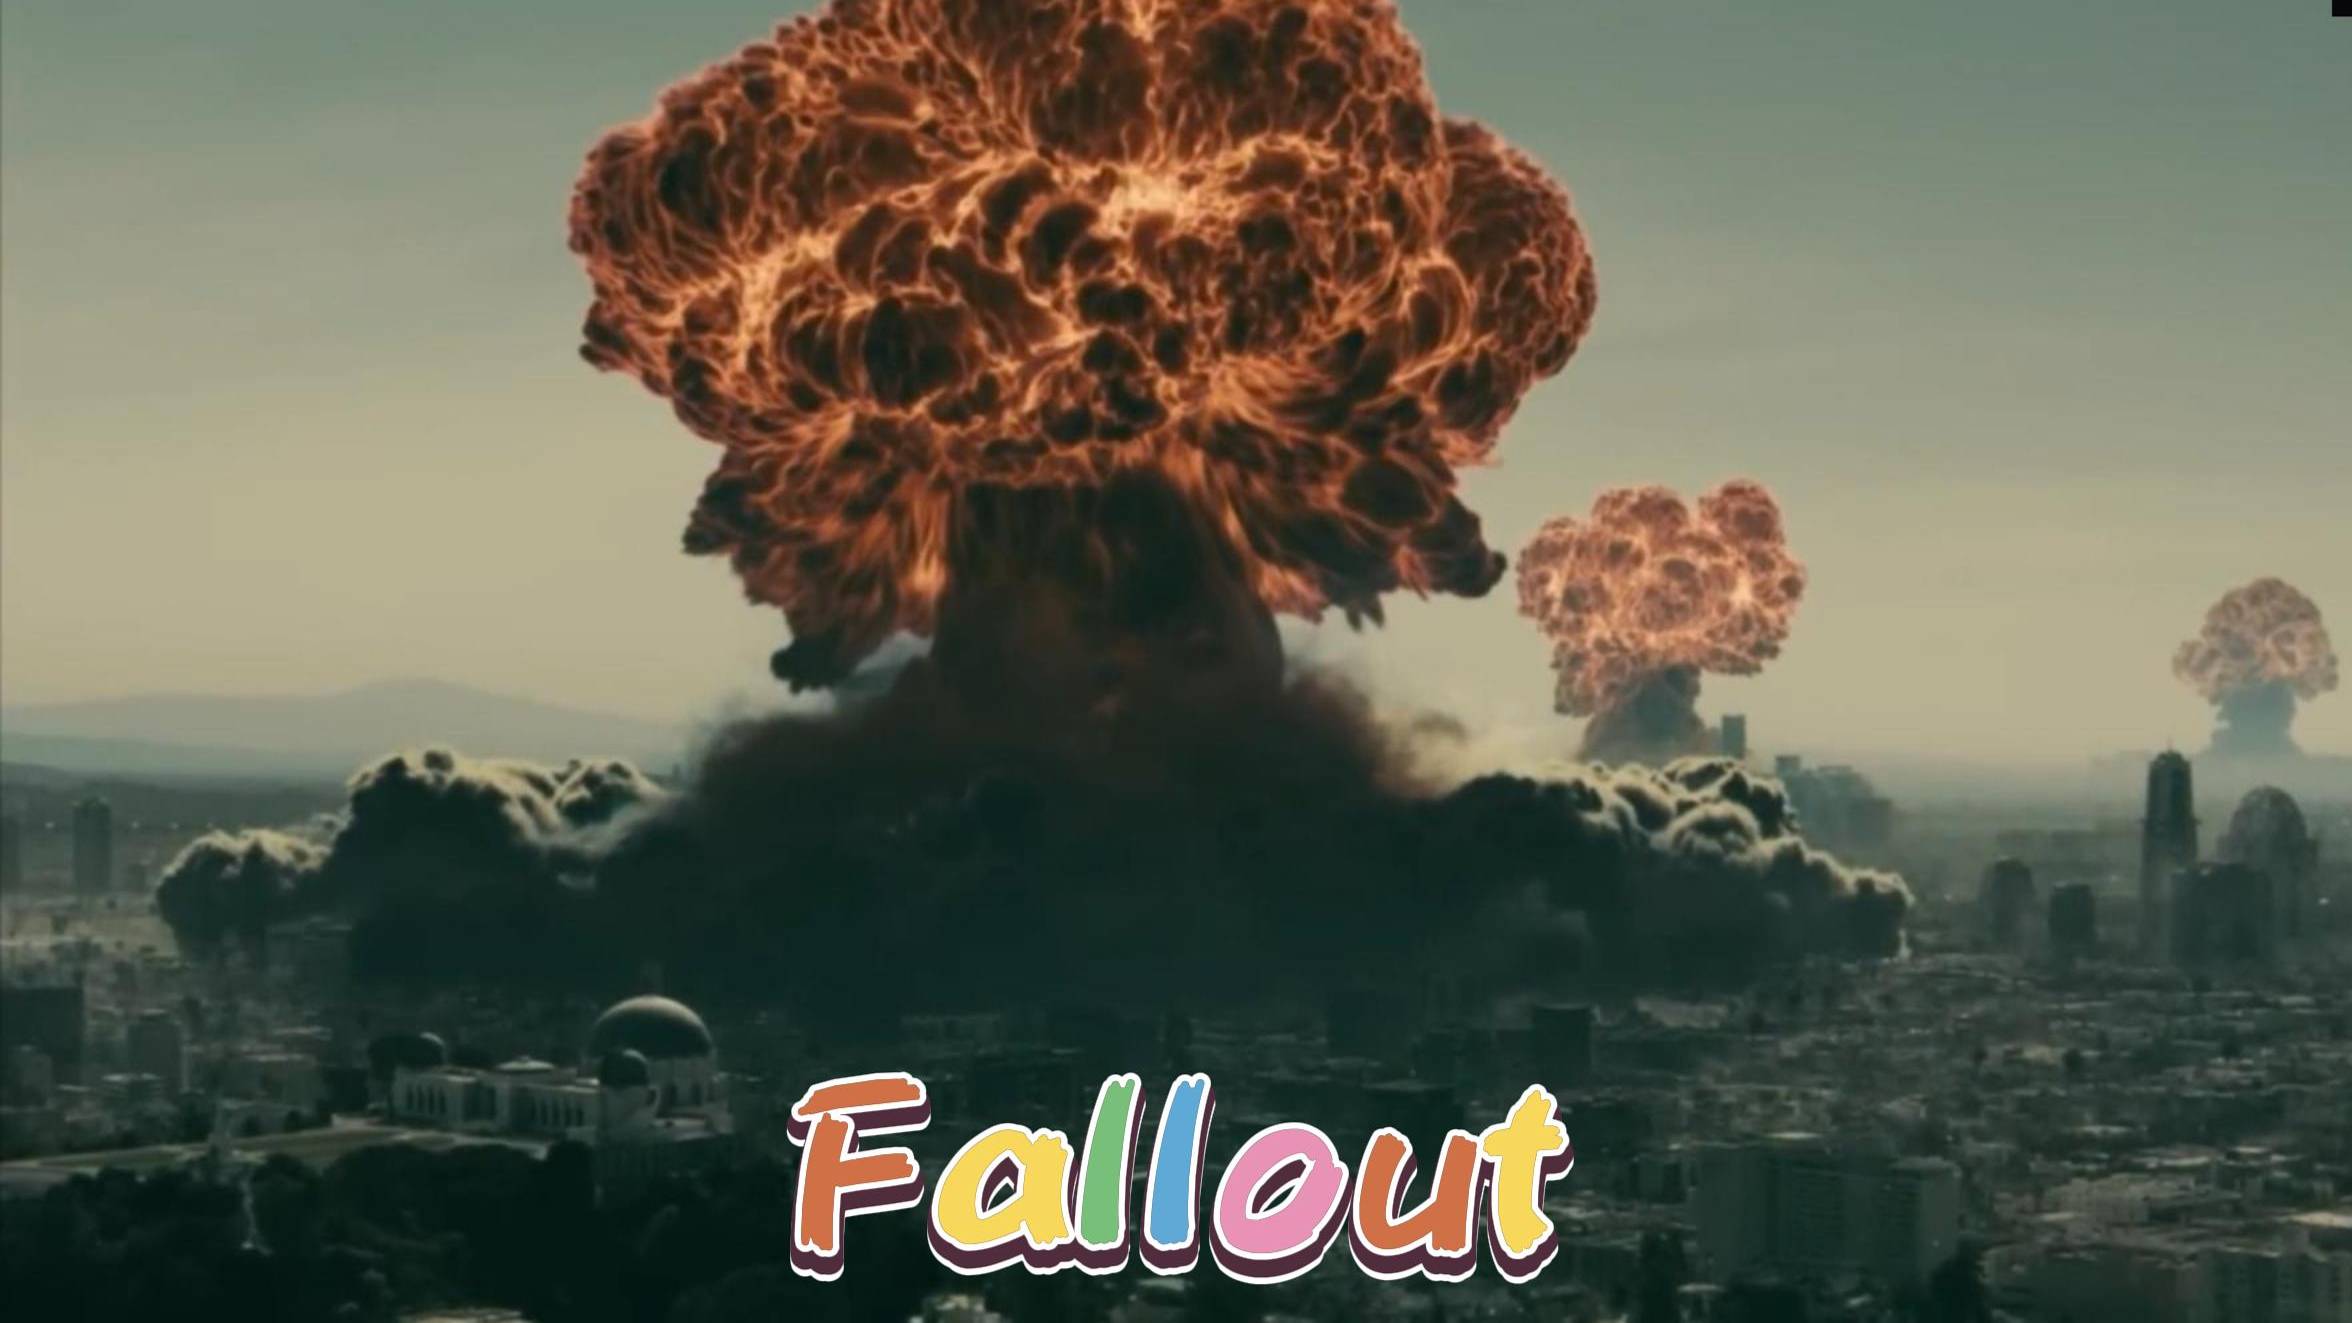 Fallout. Атомная бомбардировка #Фоллаут #Fallout #врекомендации #втоп #top #нарезка #лучшее #CapCut